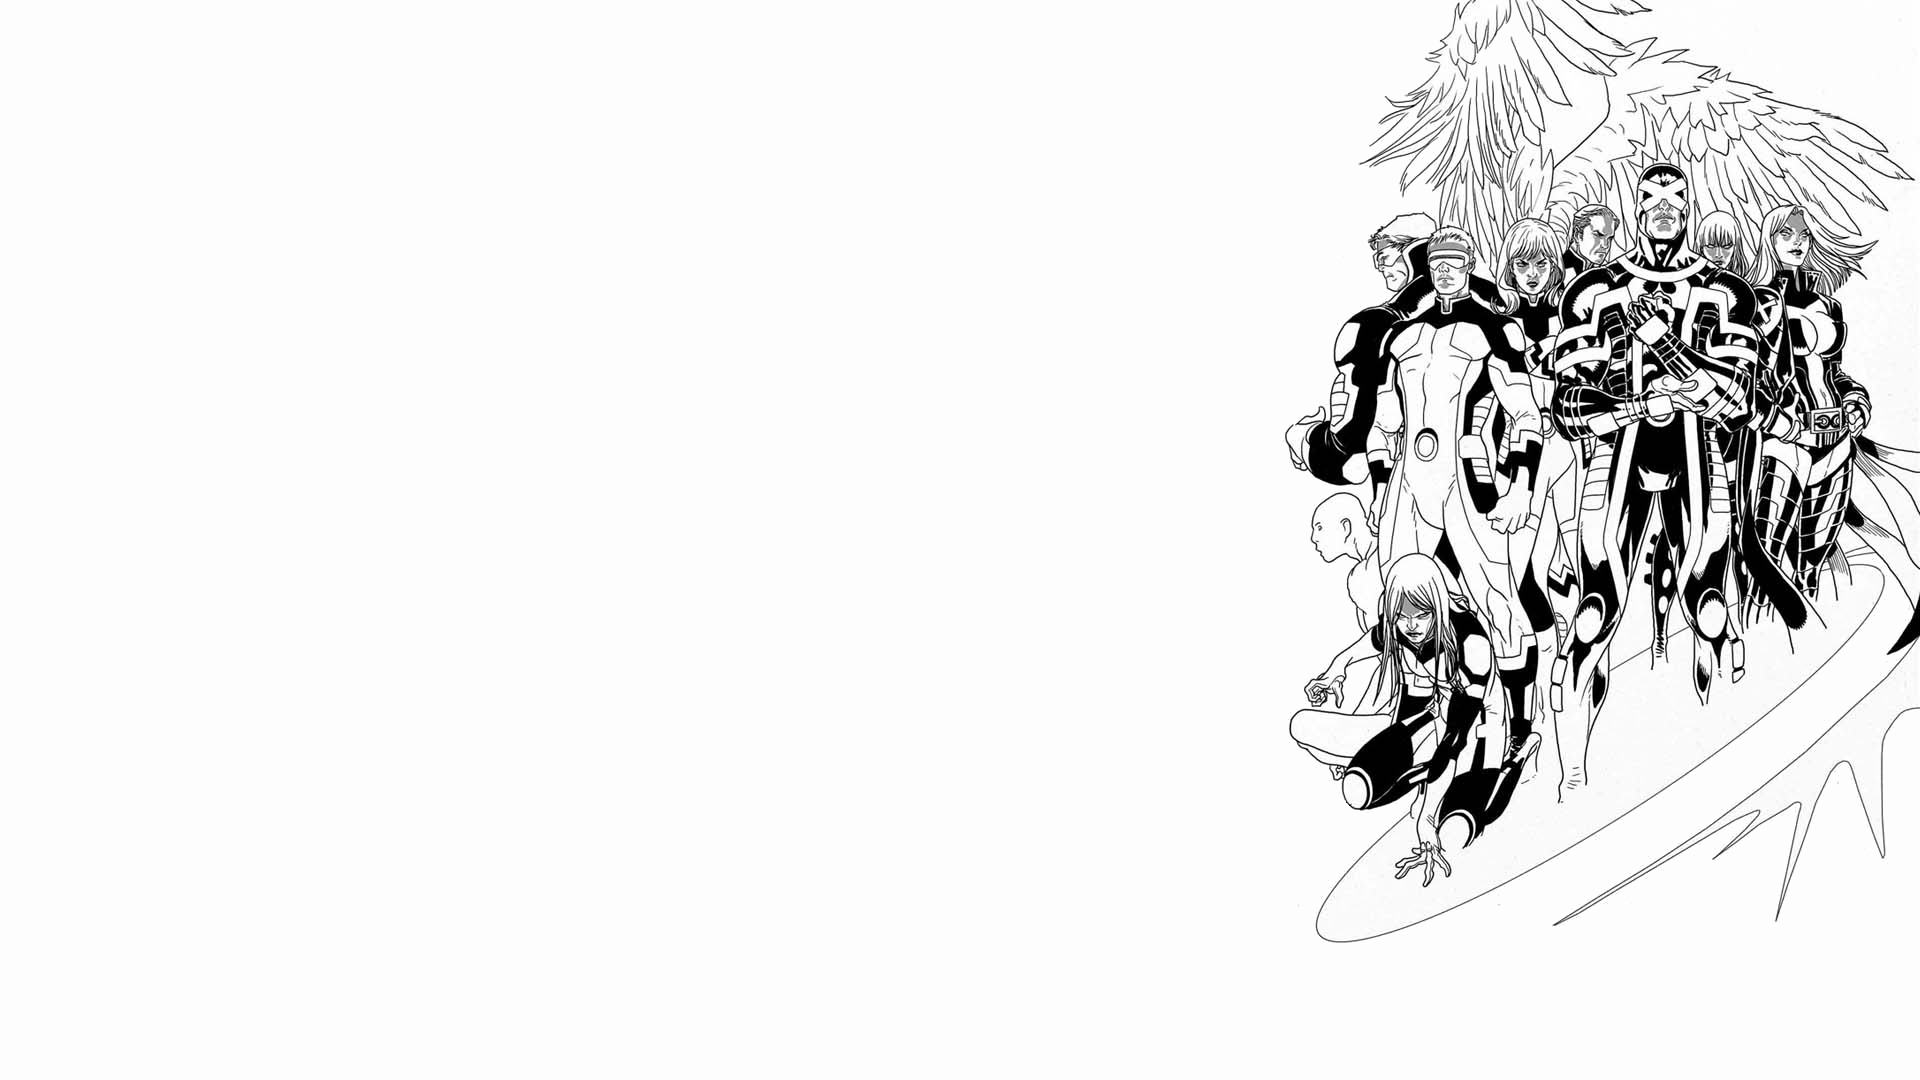 Comics X-Men: No More Humans HD Wallpaper | Background Image